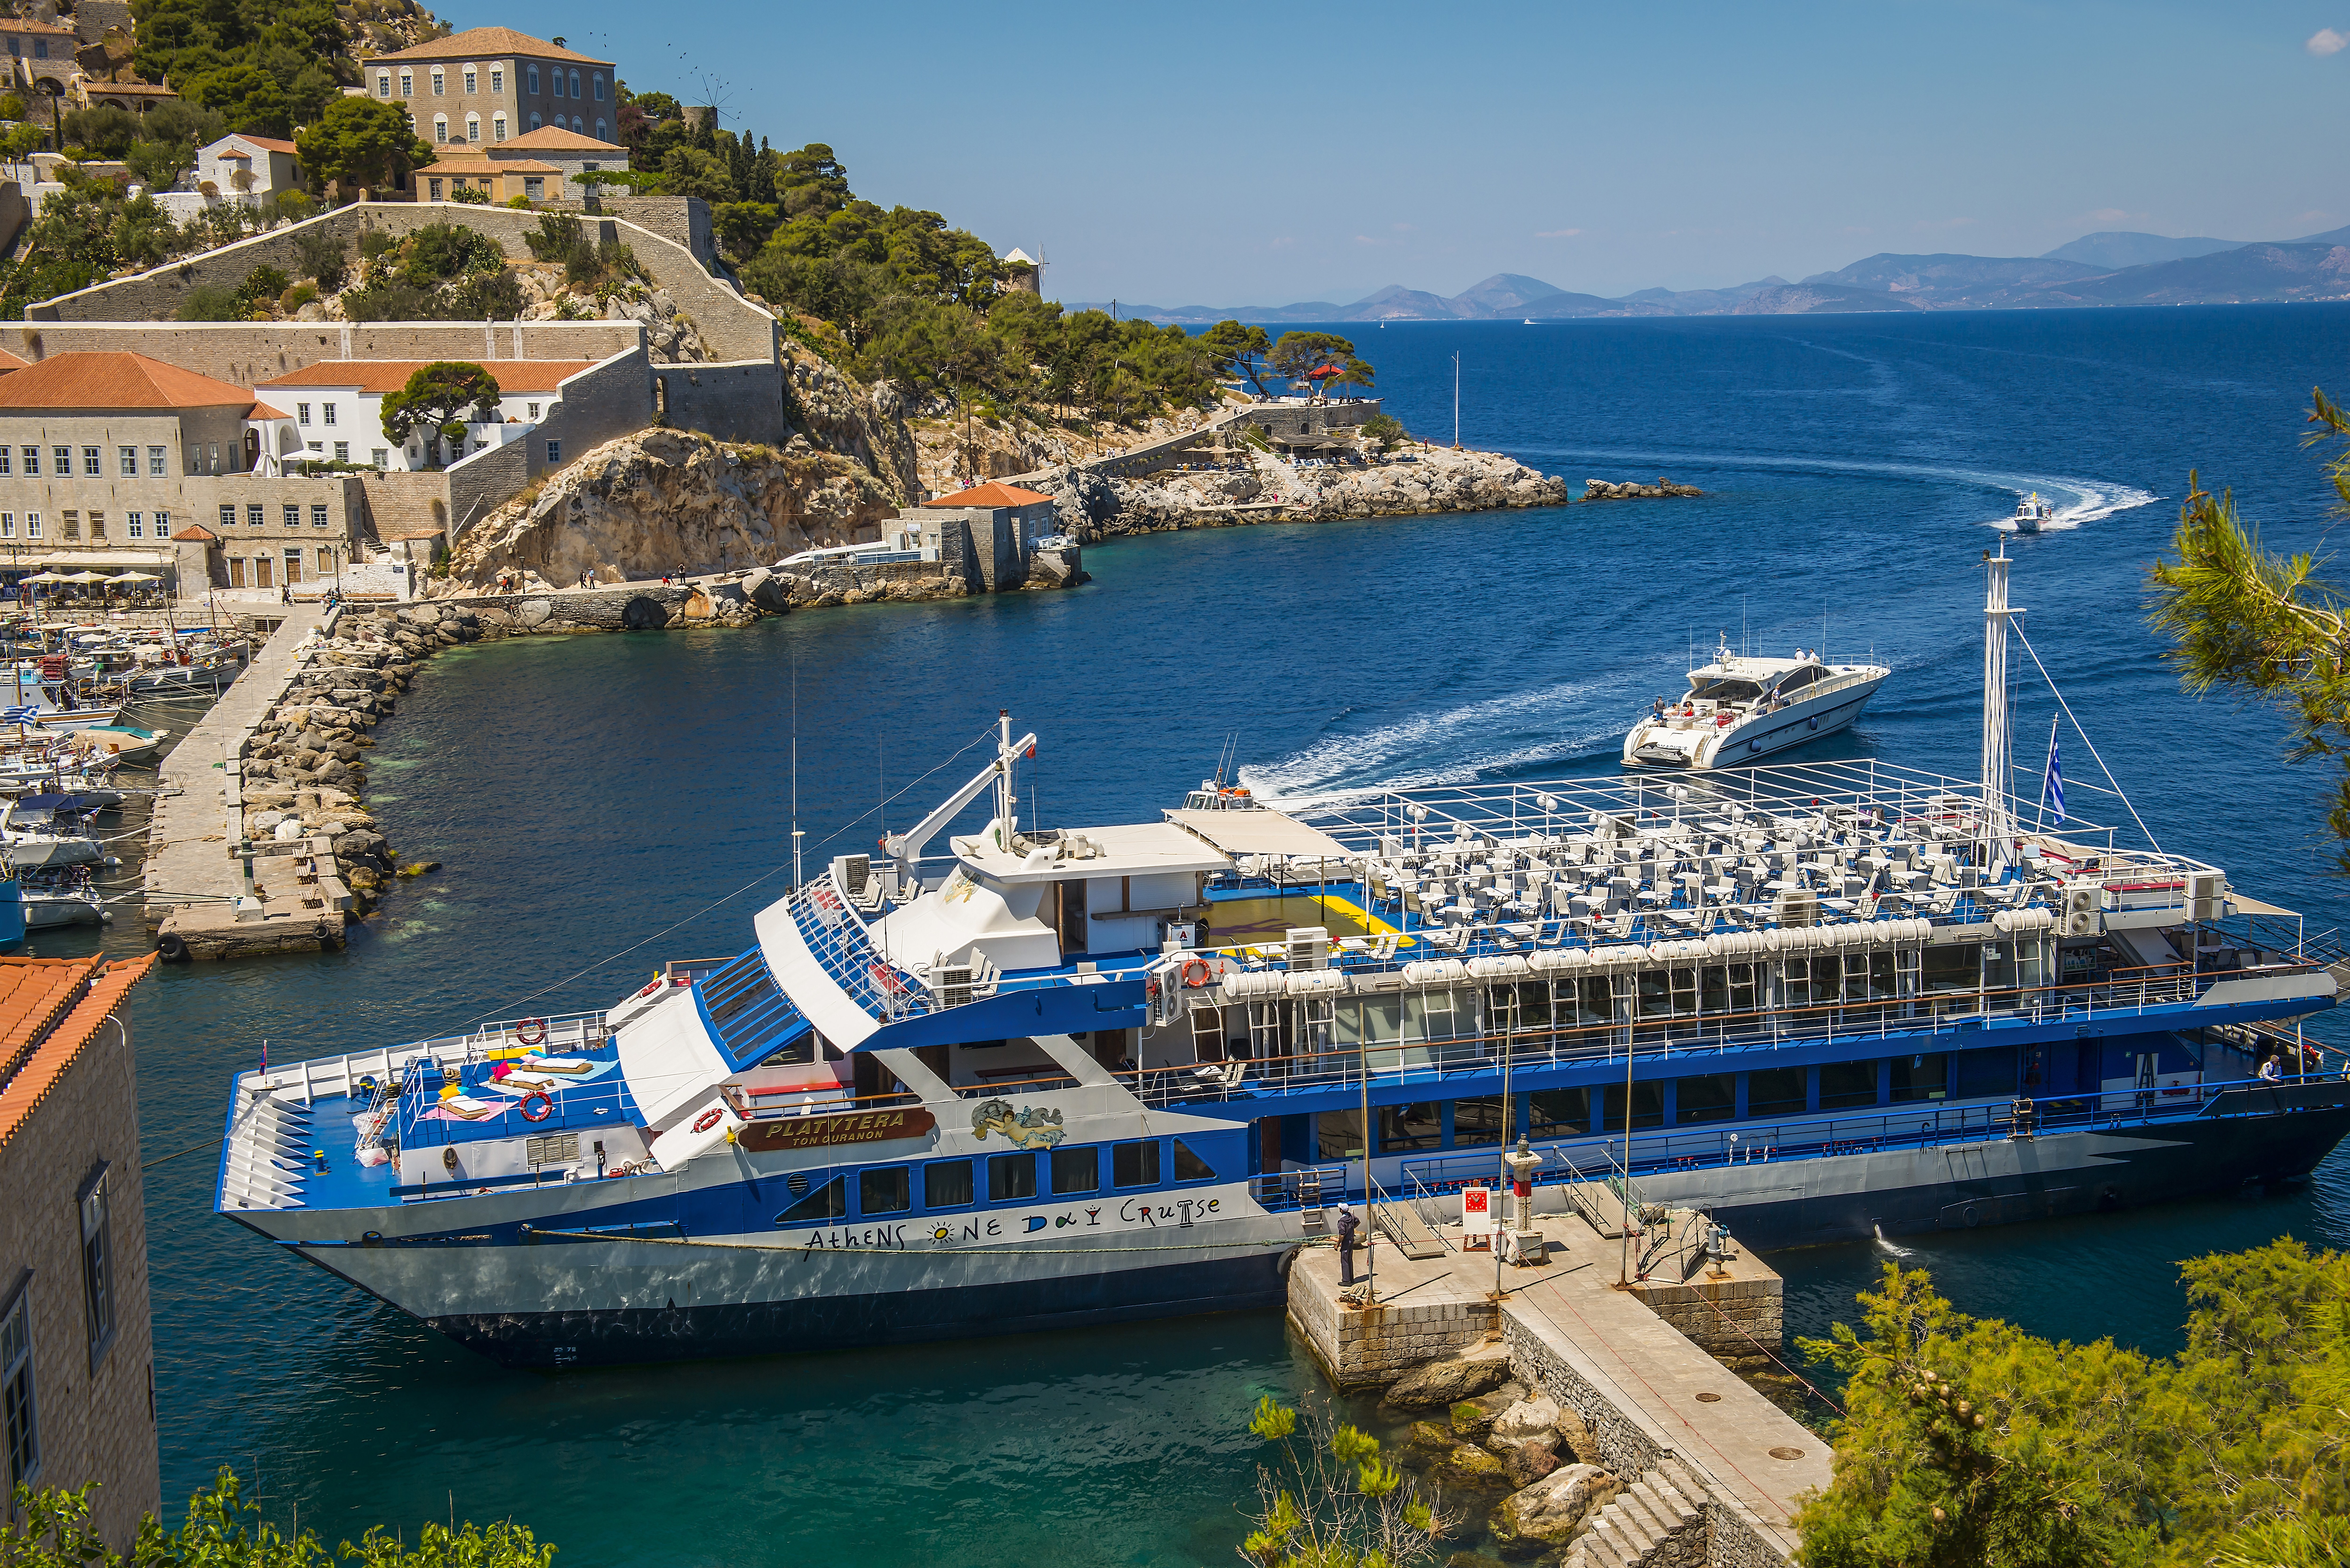 Platytera - Athens Day Cruise